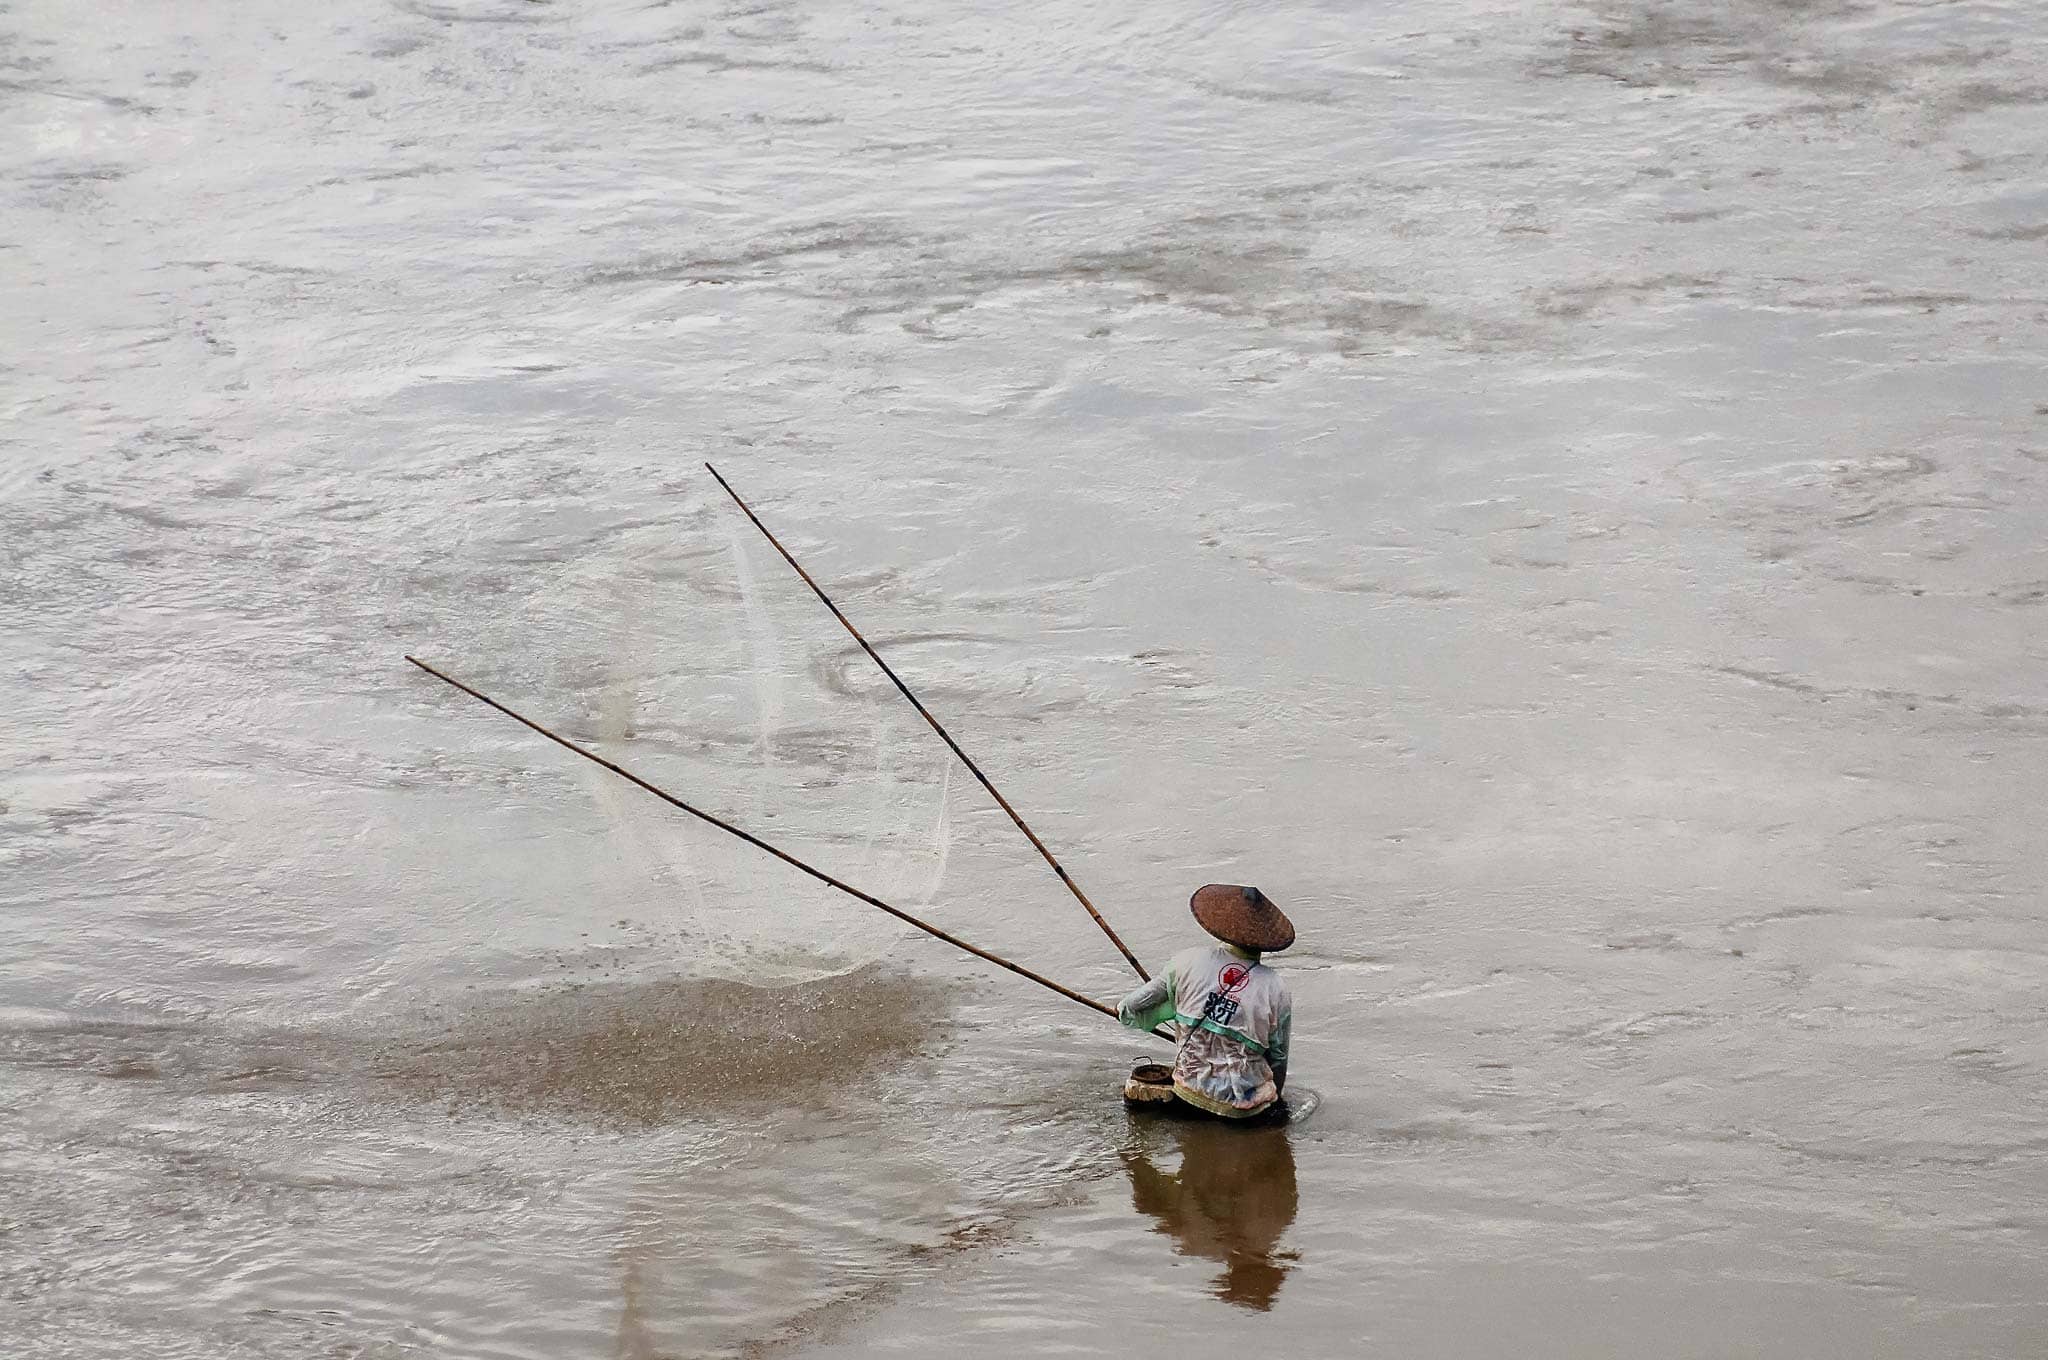 Fisherman, Luang Prabang, Laos 2009